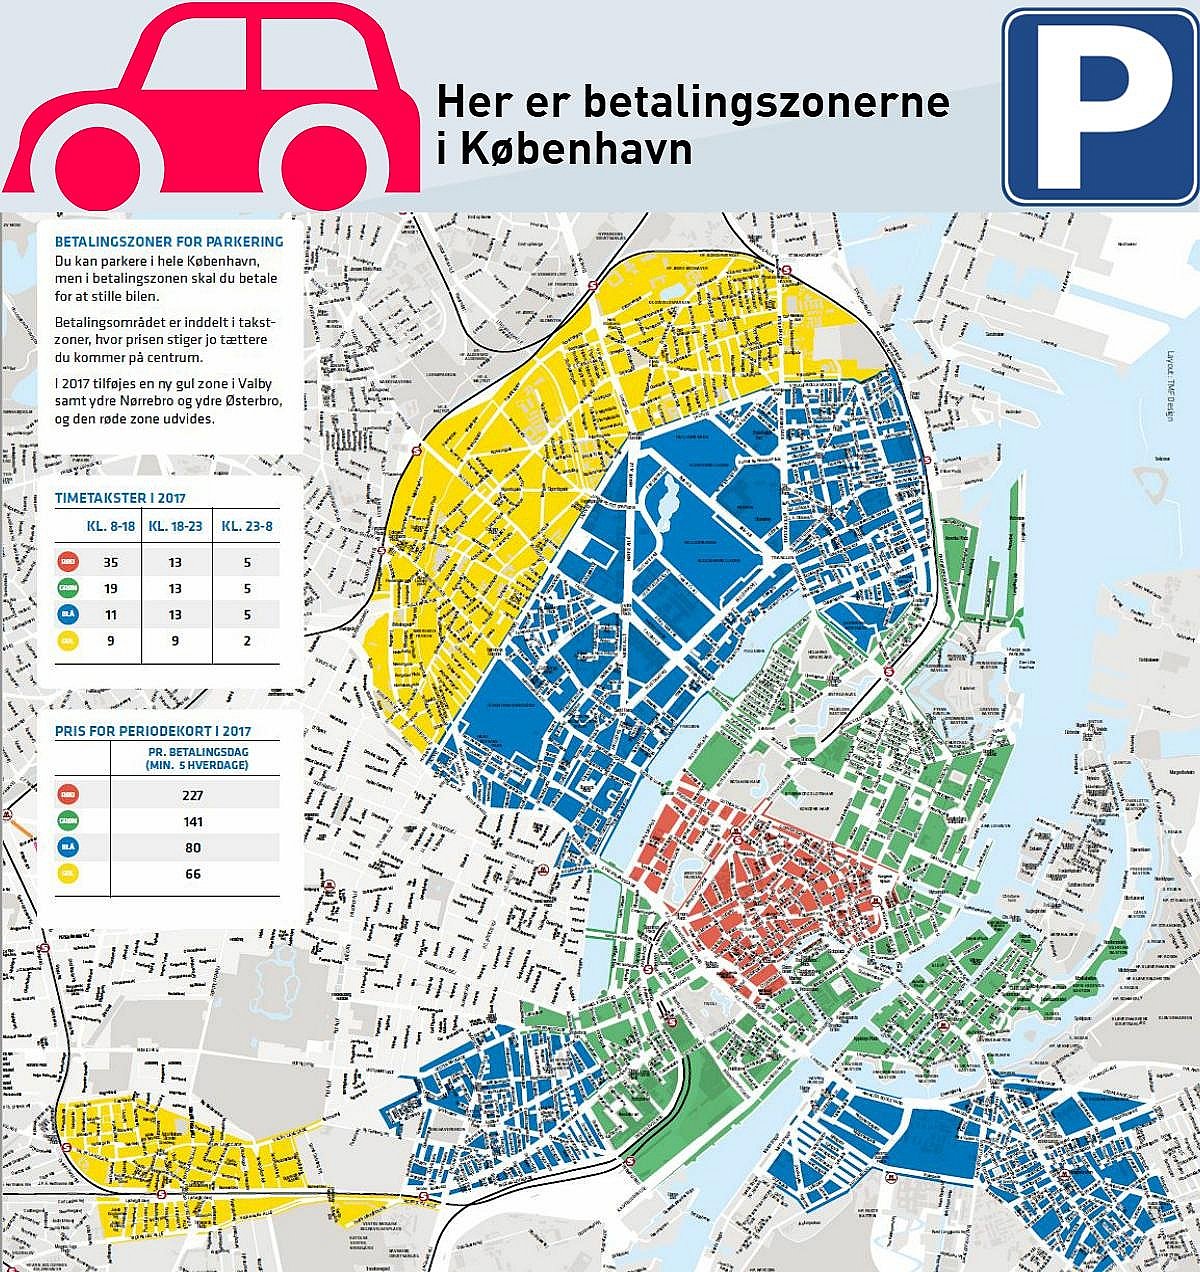 bånd Flyvningen tørre Dyrere parkering i Købehavn - men billigere for grønne biler | TV 2 Lorry